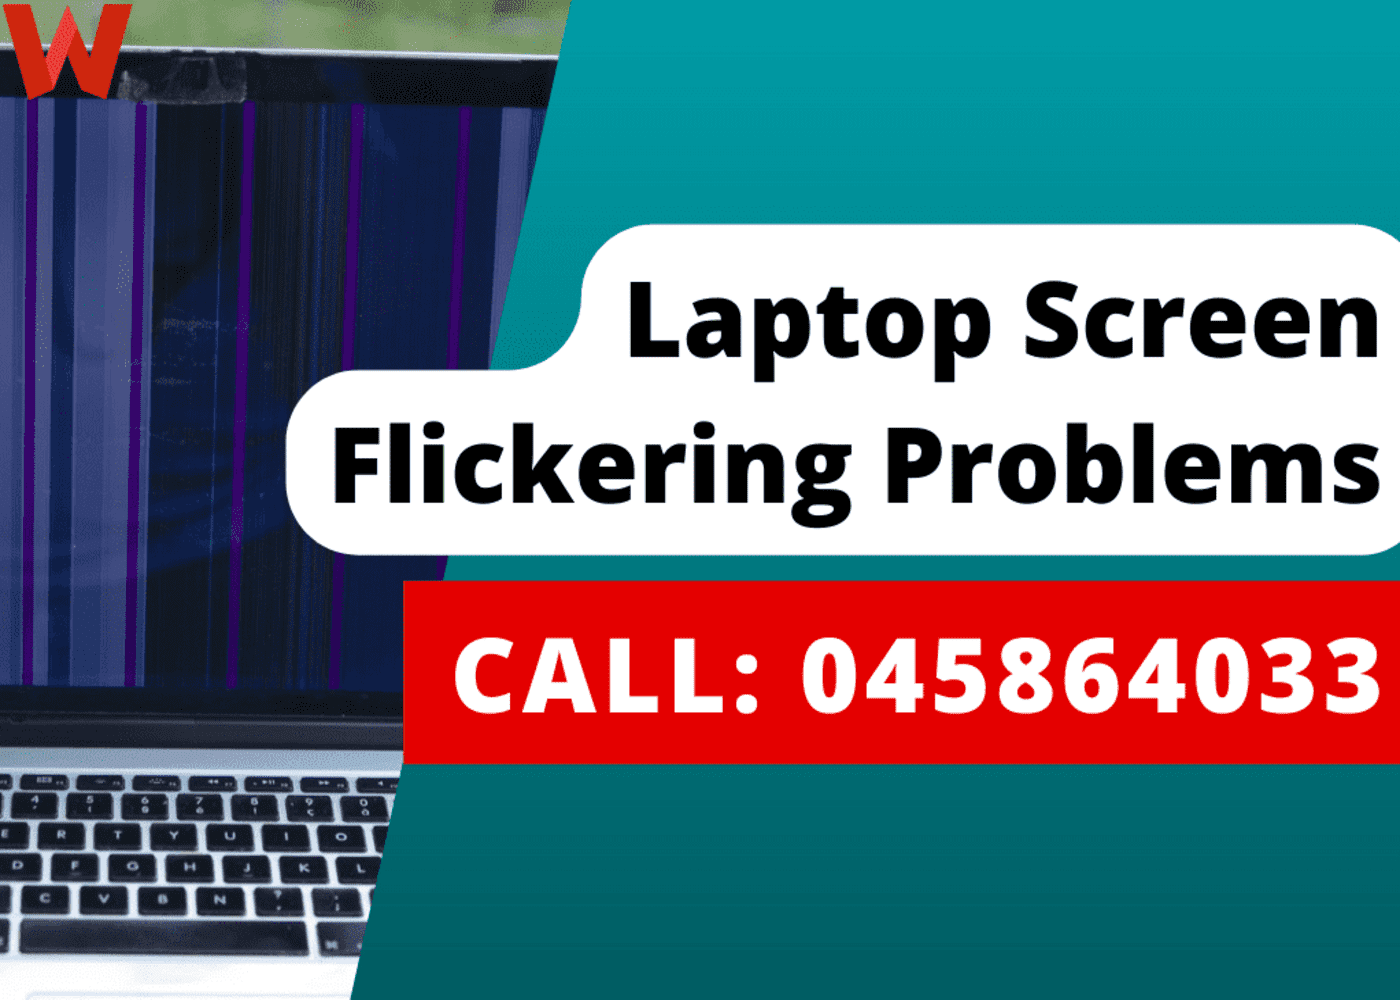 Laptop Screen Flickering? Heres How to Fix It